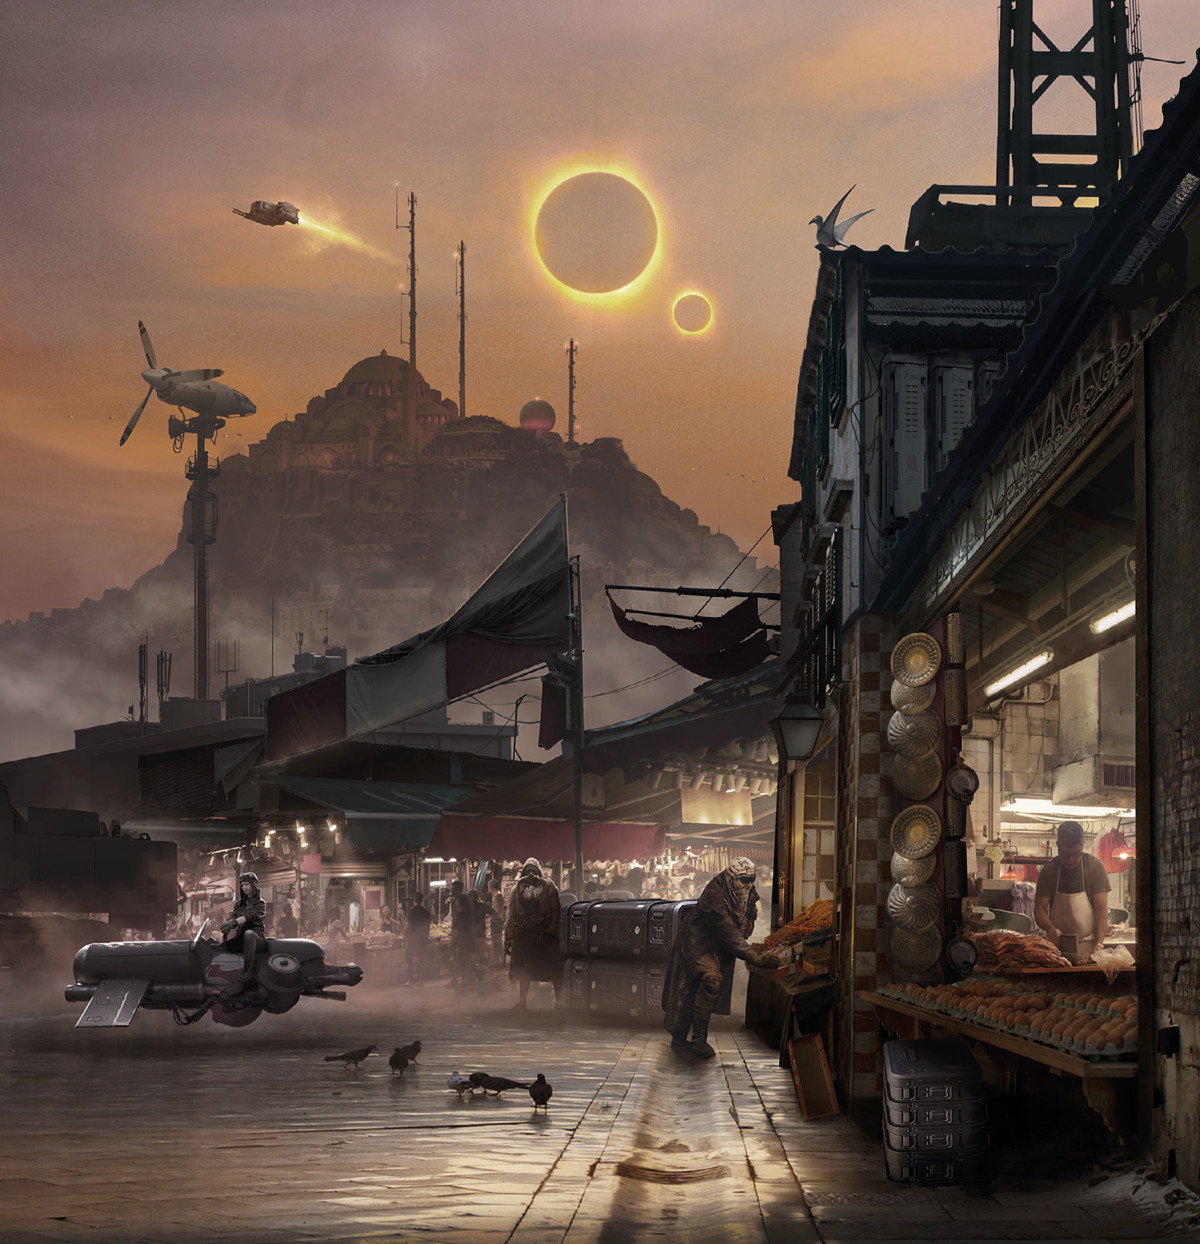 Ironsword: Starforged art depicting a sci-fi market under an alien sky